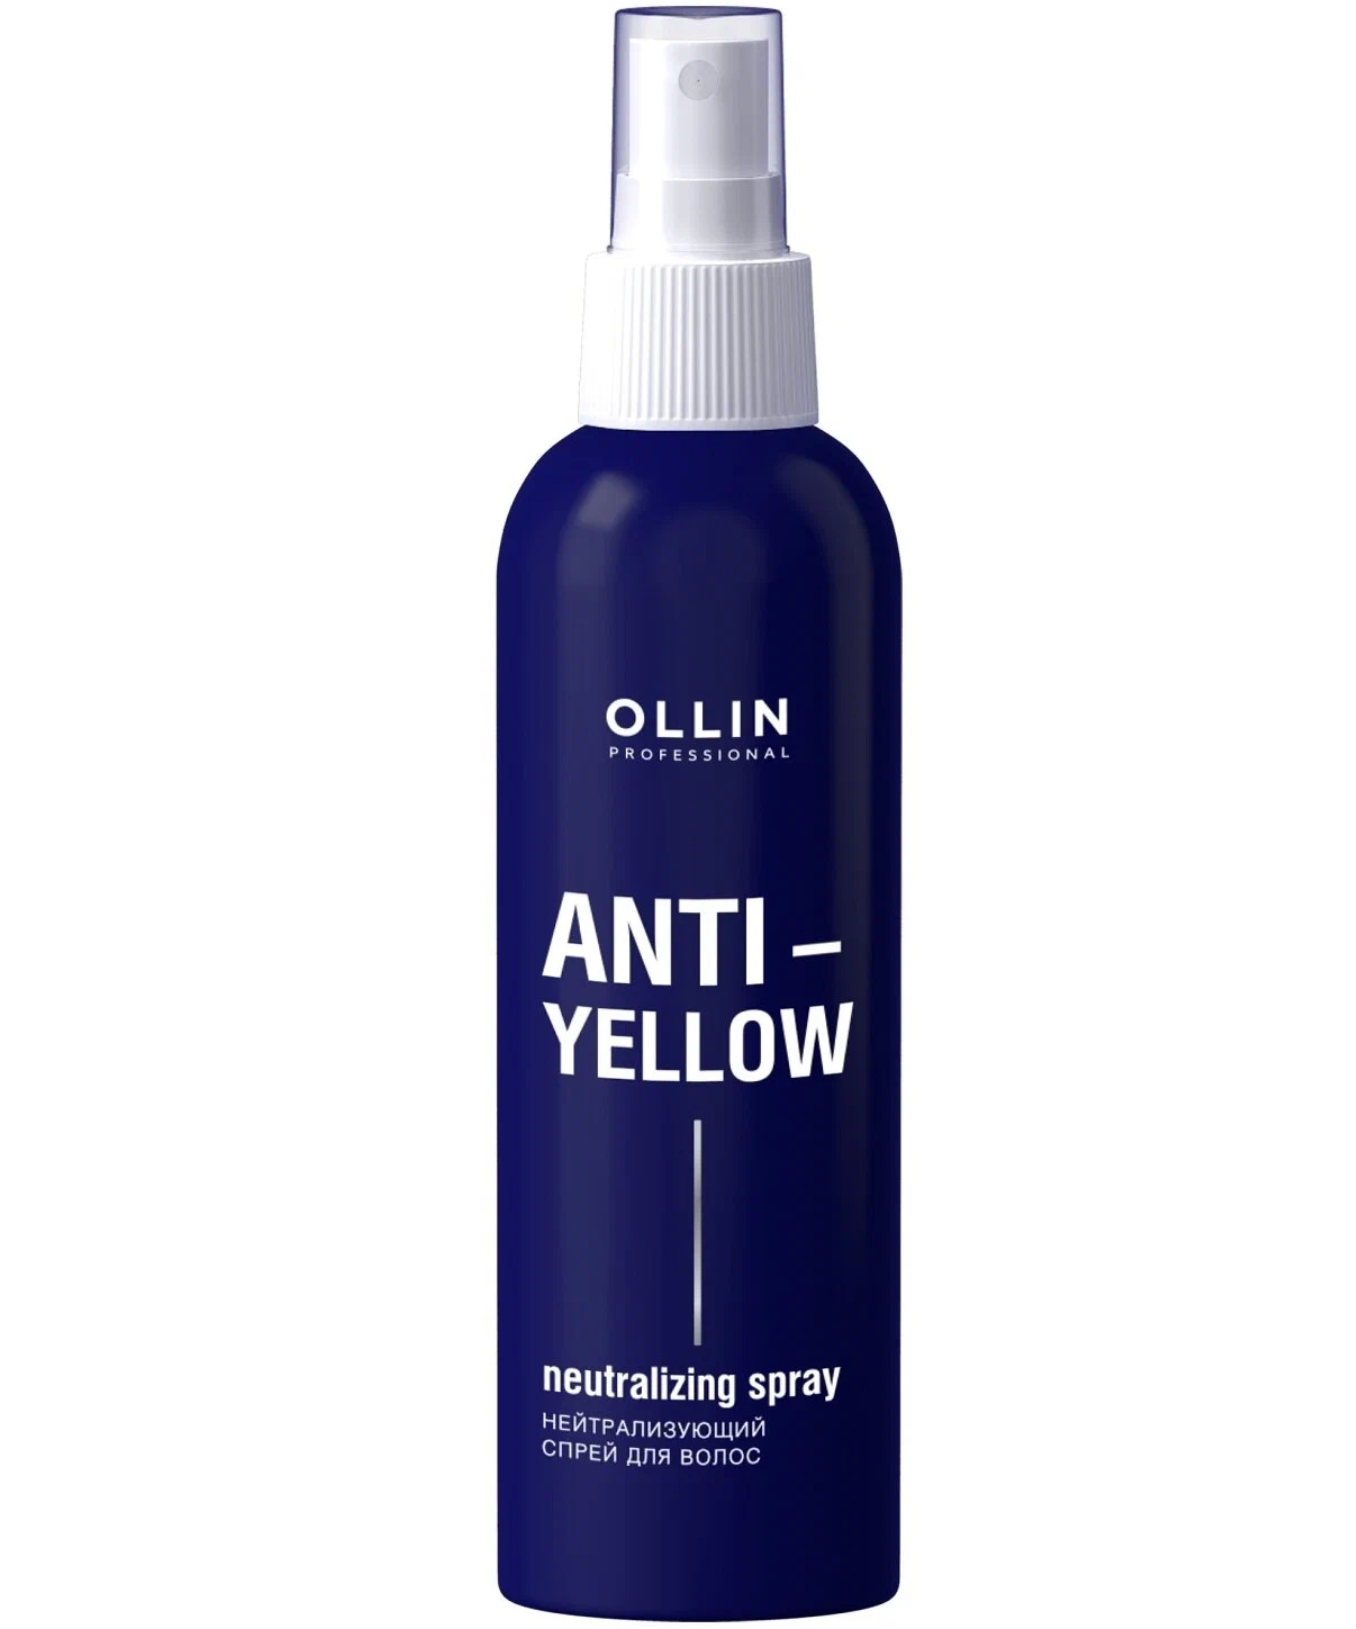 Оллин / Ollin Professional - Спрей для волос нейтрализующий Anti-Yellow 150 мл